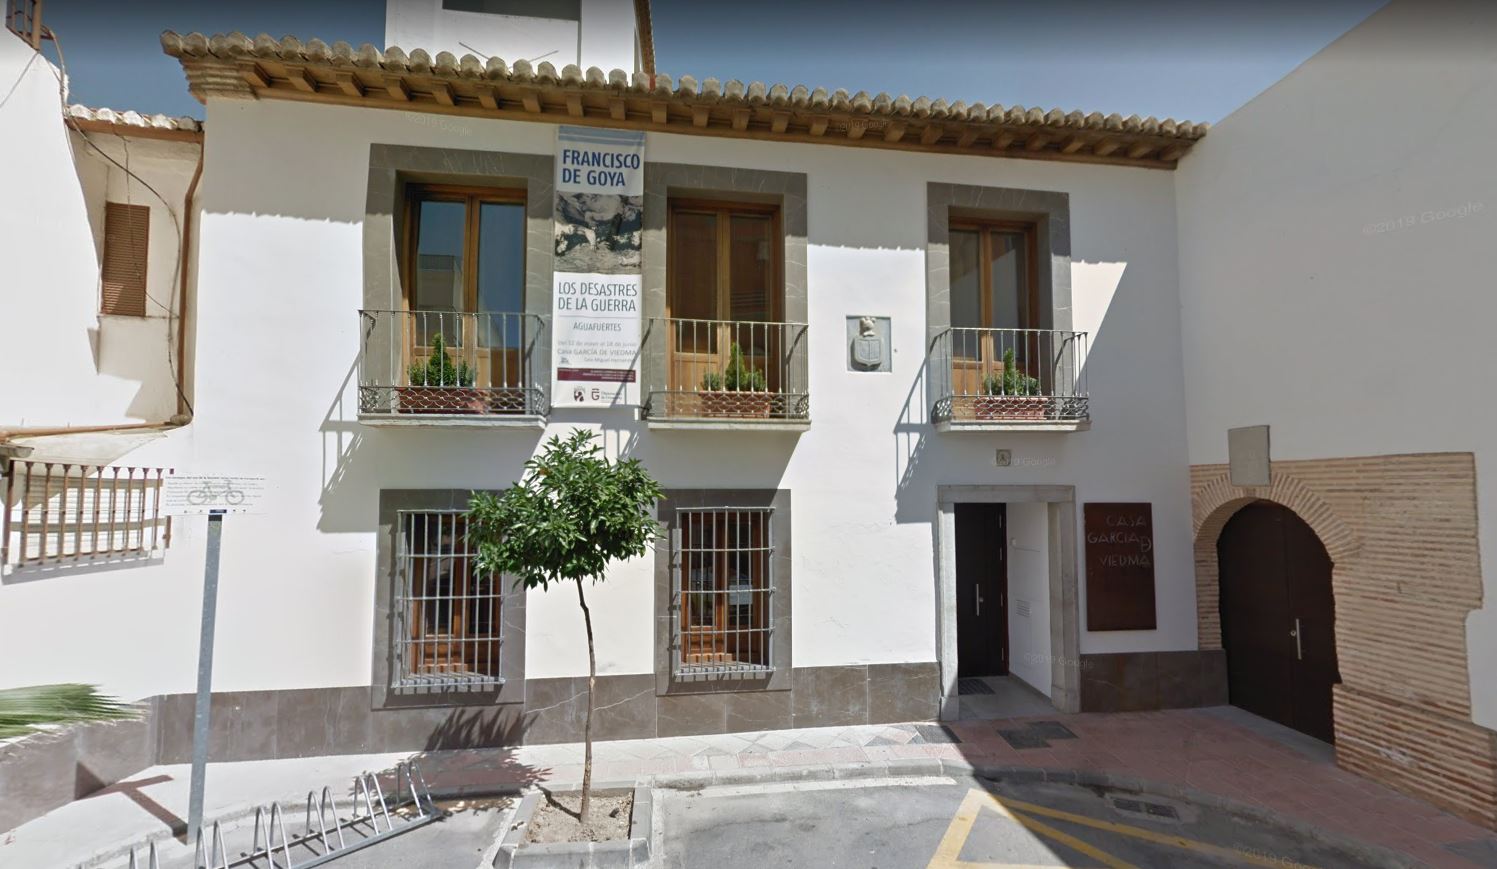 Casa Garcia de Viedma - Museo Etnográfico de Armilla